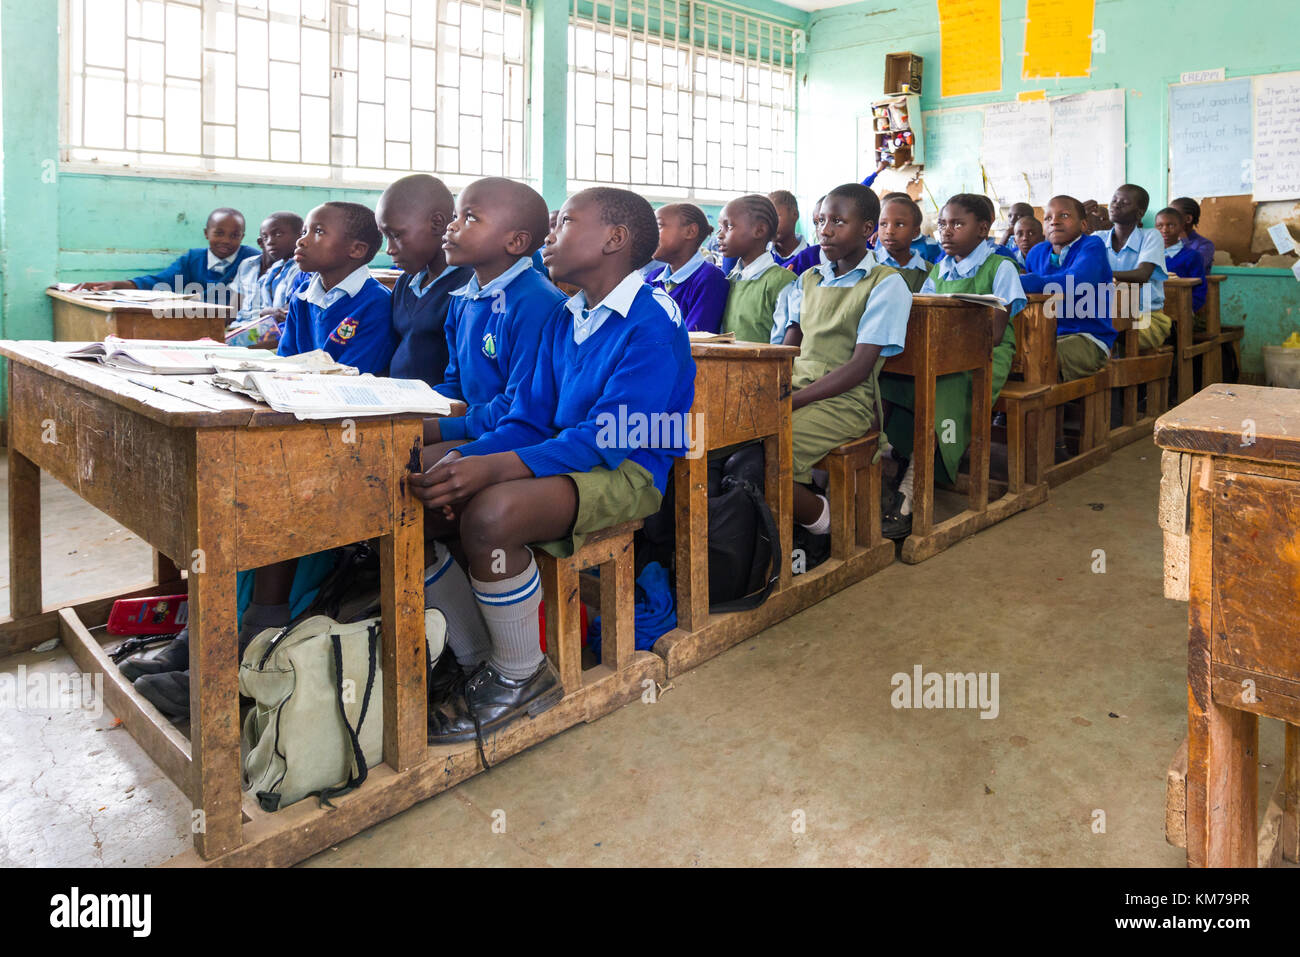 Schulkinder in Uniform saßen an Holztischen und hörten während des Unterrichts ihrem Lehrer in Nairobi, Kenia, zu Stockfoto